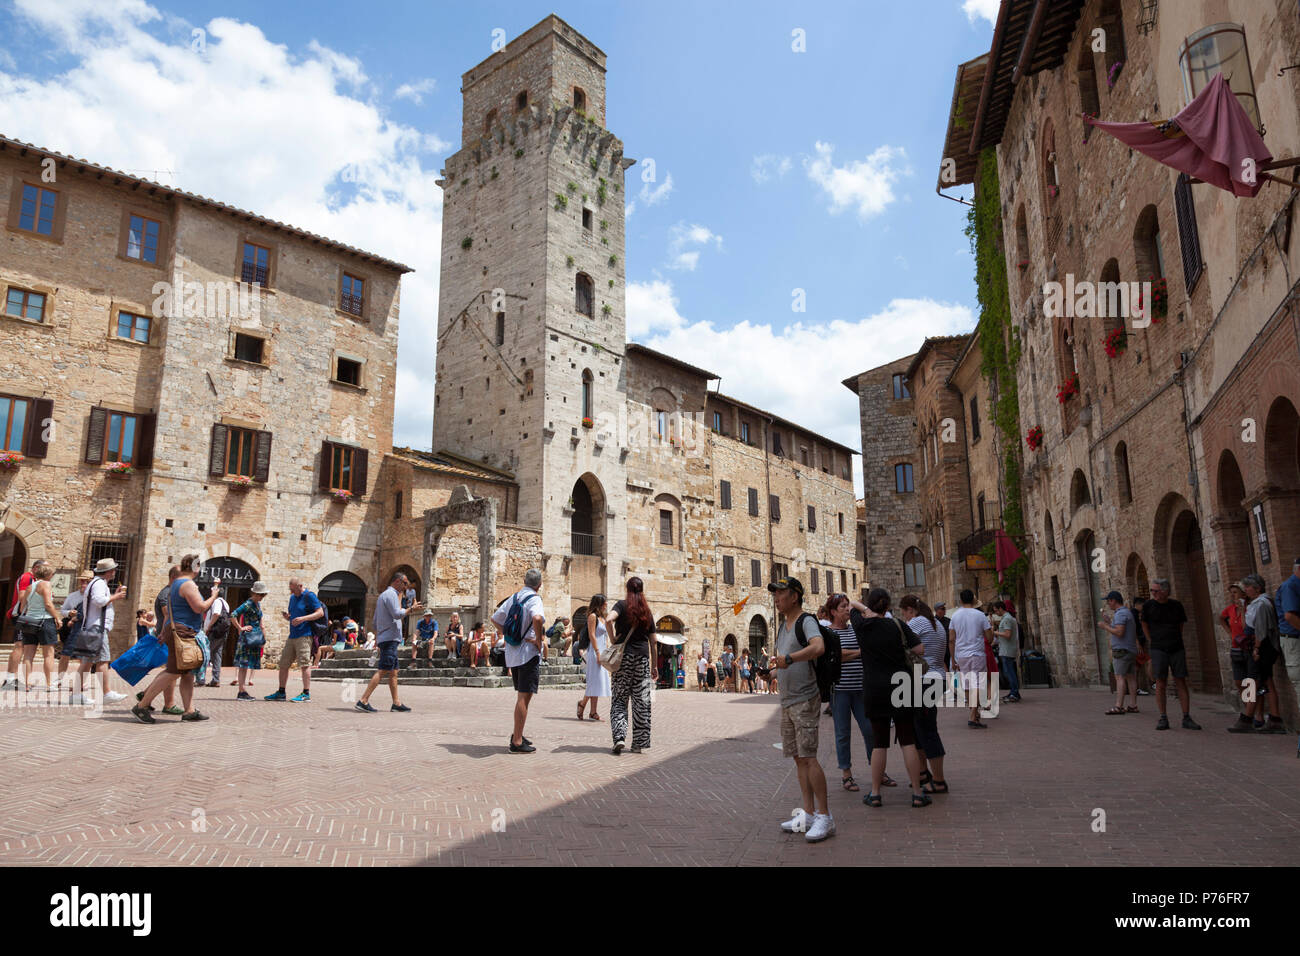 Légèrement en pente vers le bas, la citerne square de San Gimignano (Toscane) est entouré de résidences austère datant du 13 ème siècle et 14 ème. Banque D'Images